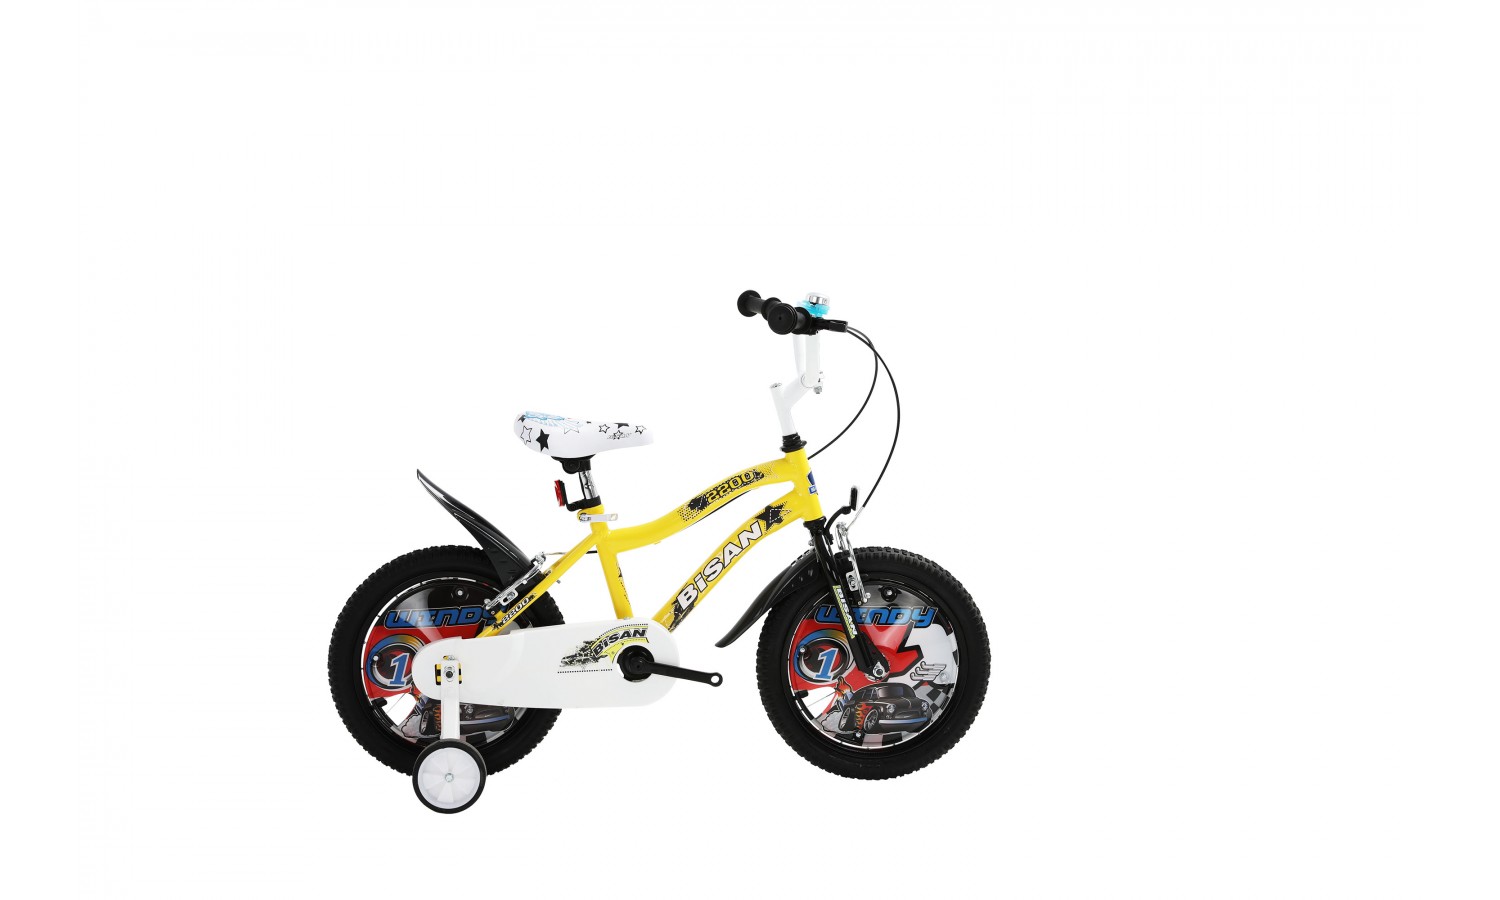 Bisan Kds 2200 Çocuk Bisikleti 16 Jant (Sarı Siyah)